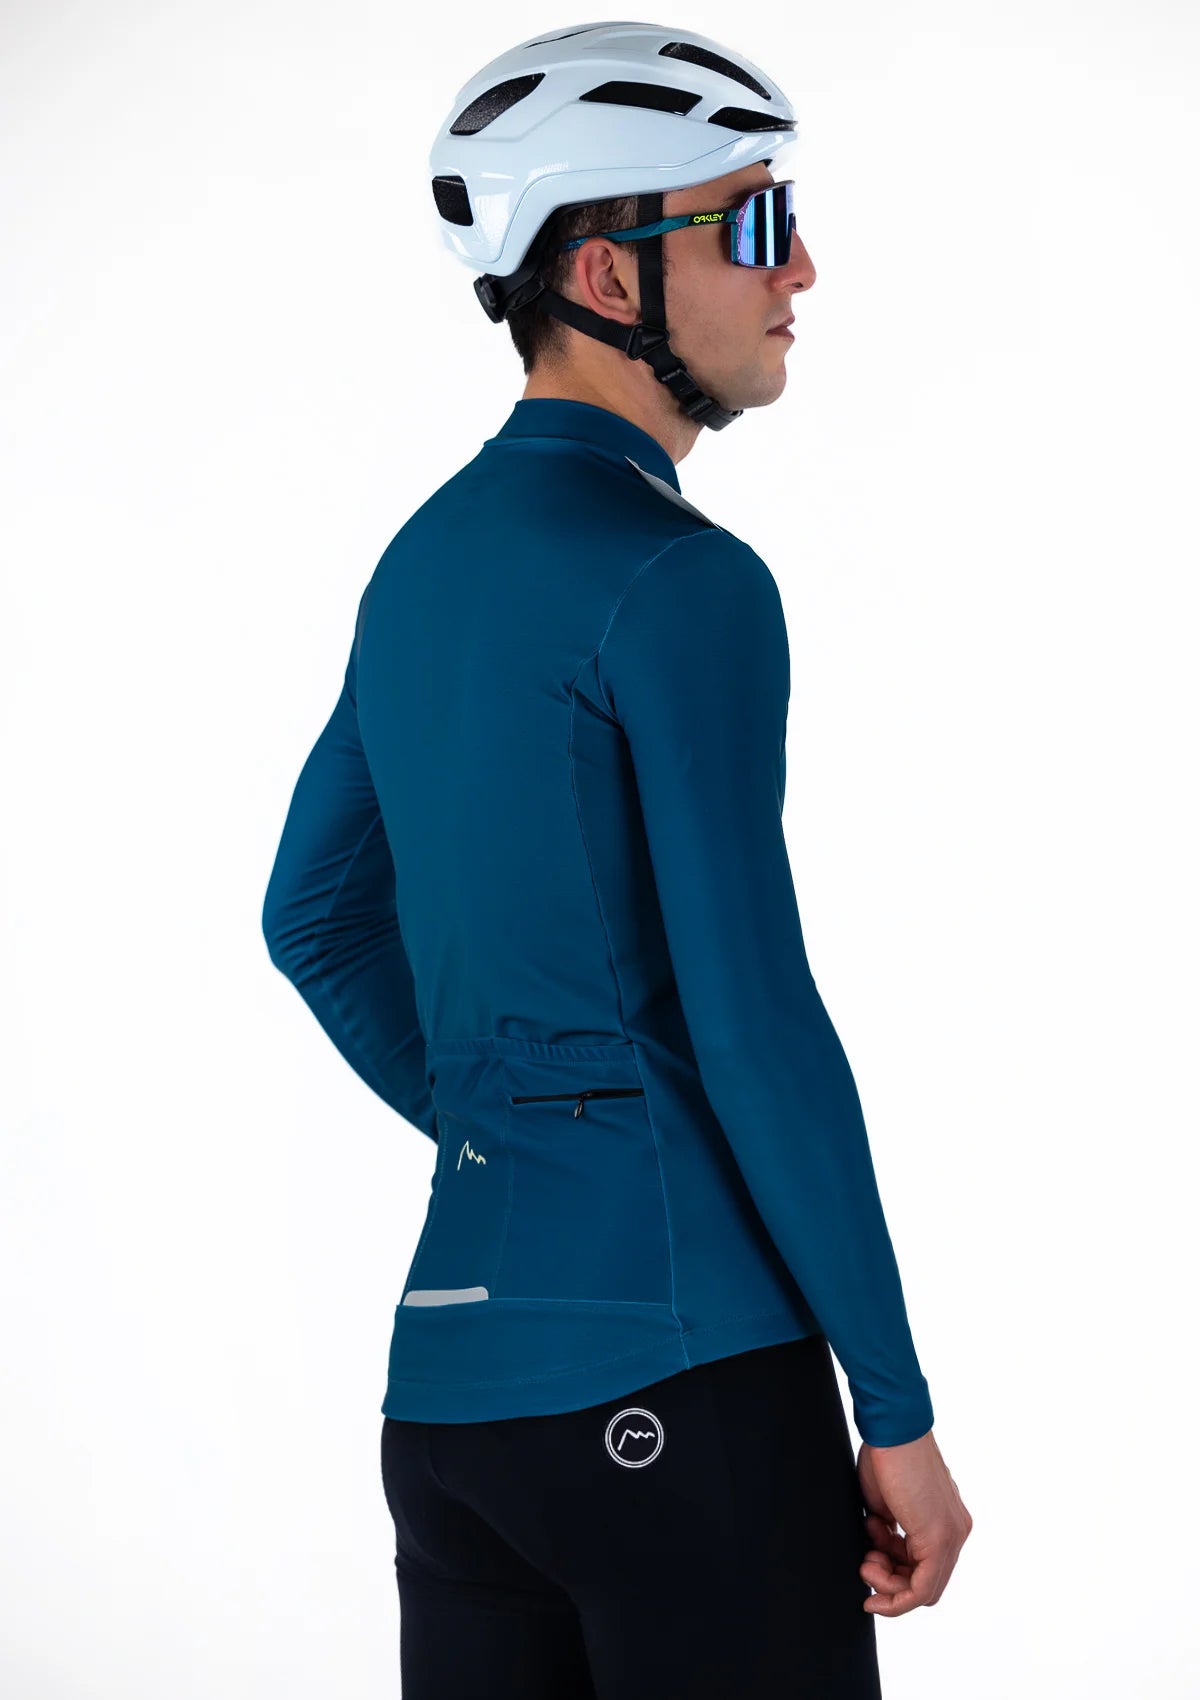 Blue Stelvio Winter Cycling Jersey